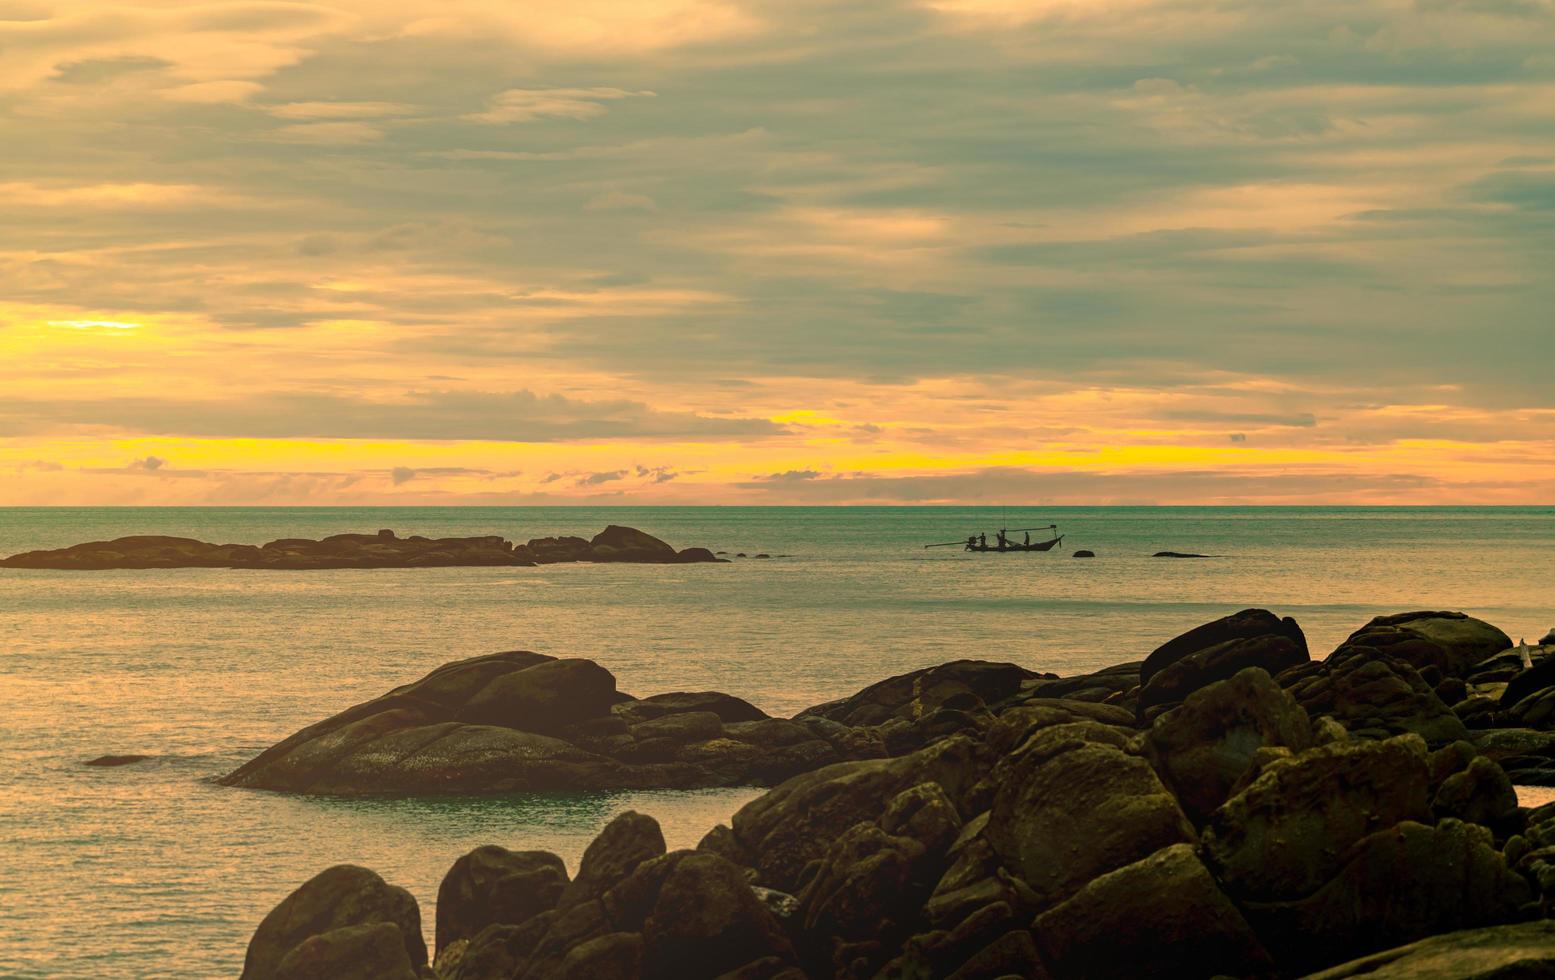 bellissima spiaggia di pietra al mattino con il cielo dorato dell'alba. pescatore in barca a coda lunga con cultura popolare della pesca. scena pacifica e tranquilla. mare calmo al mattino. vista sul mare con orizzonte. foto